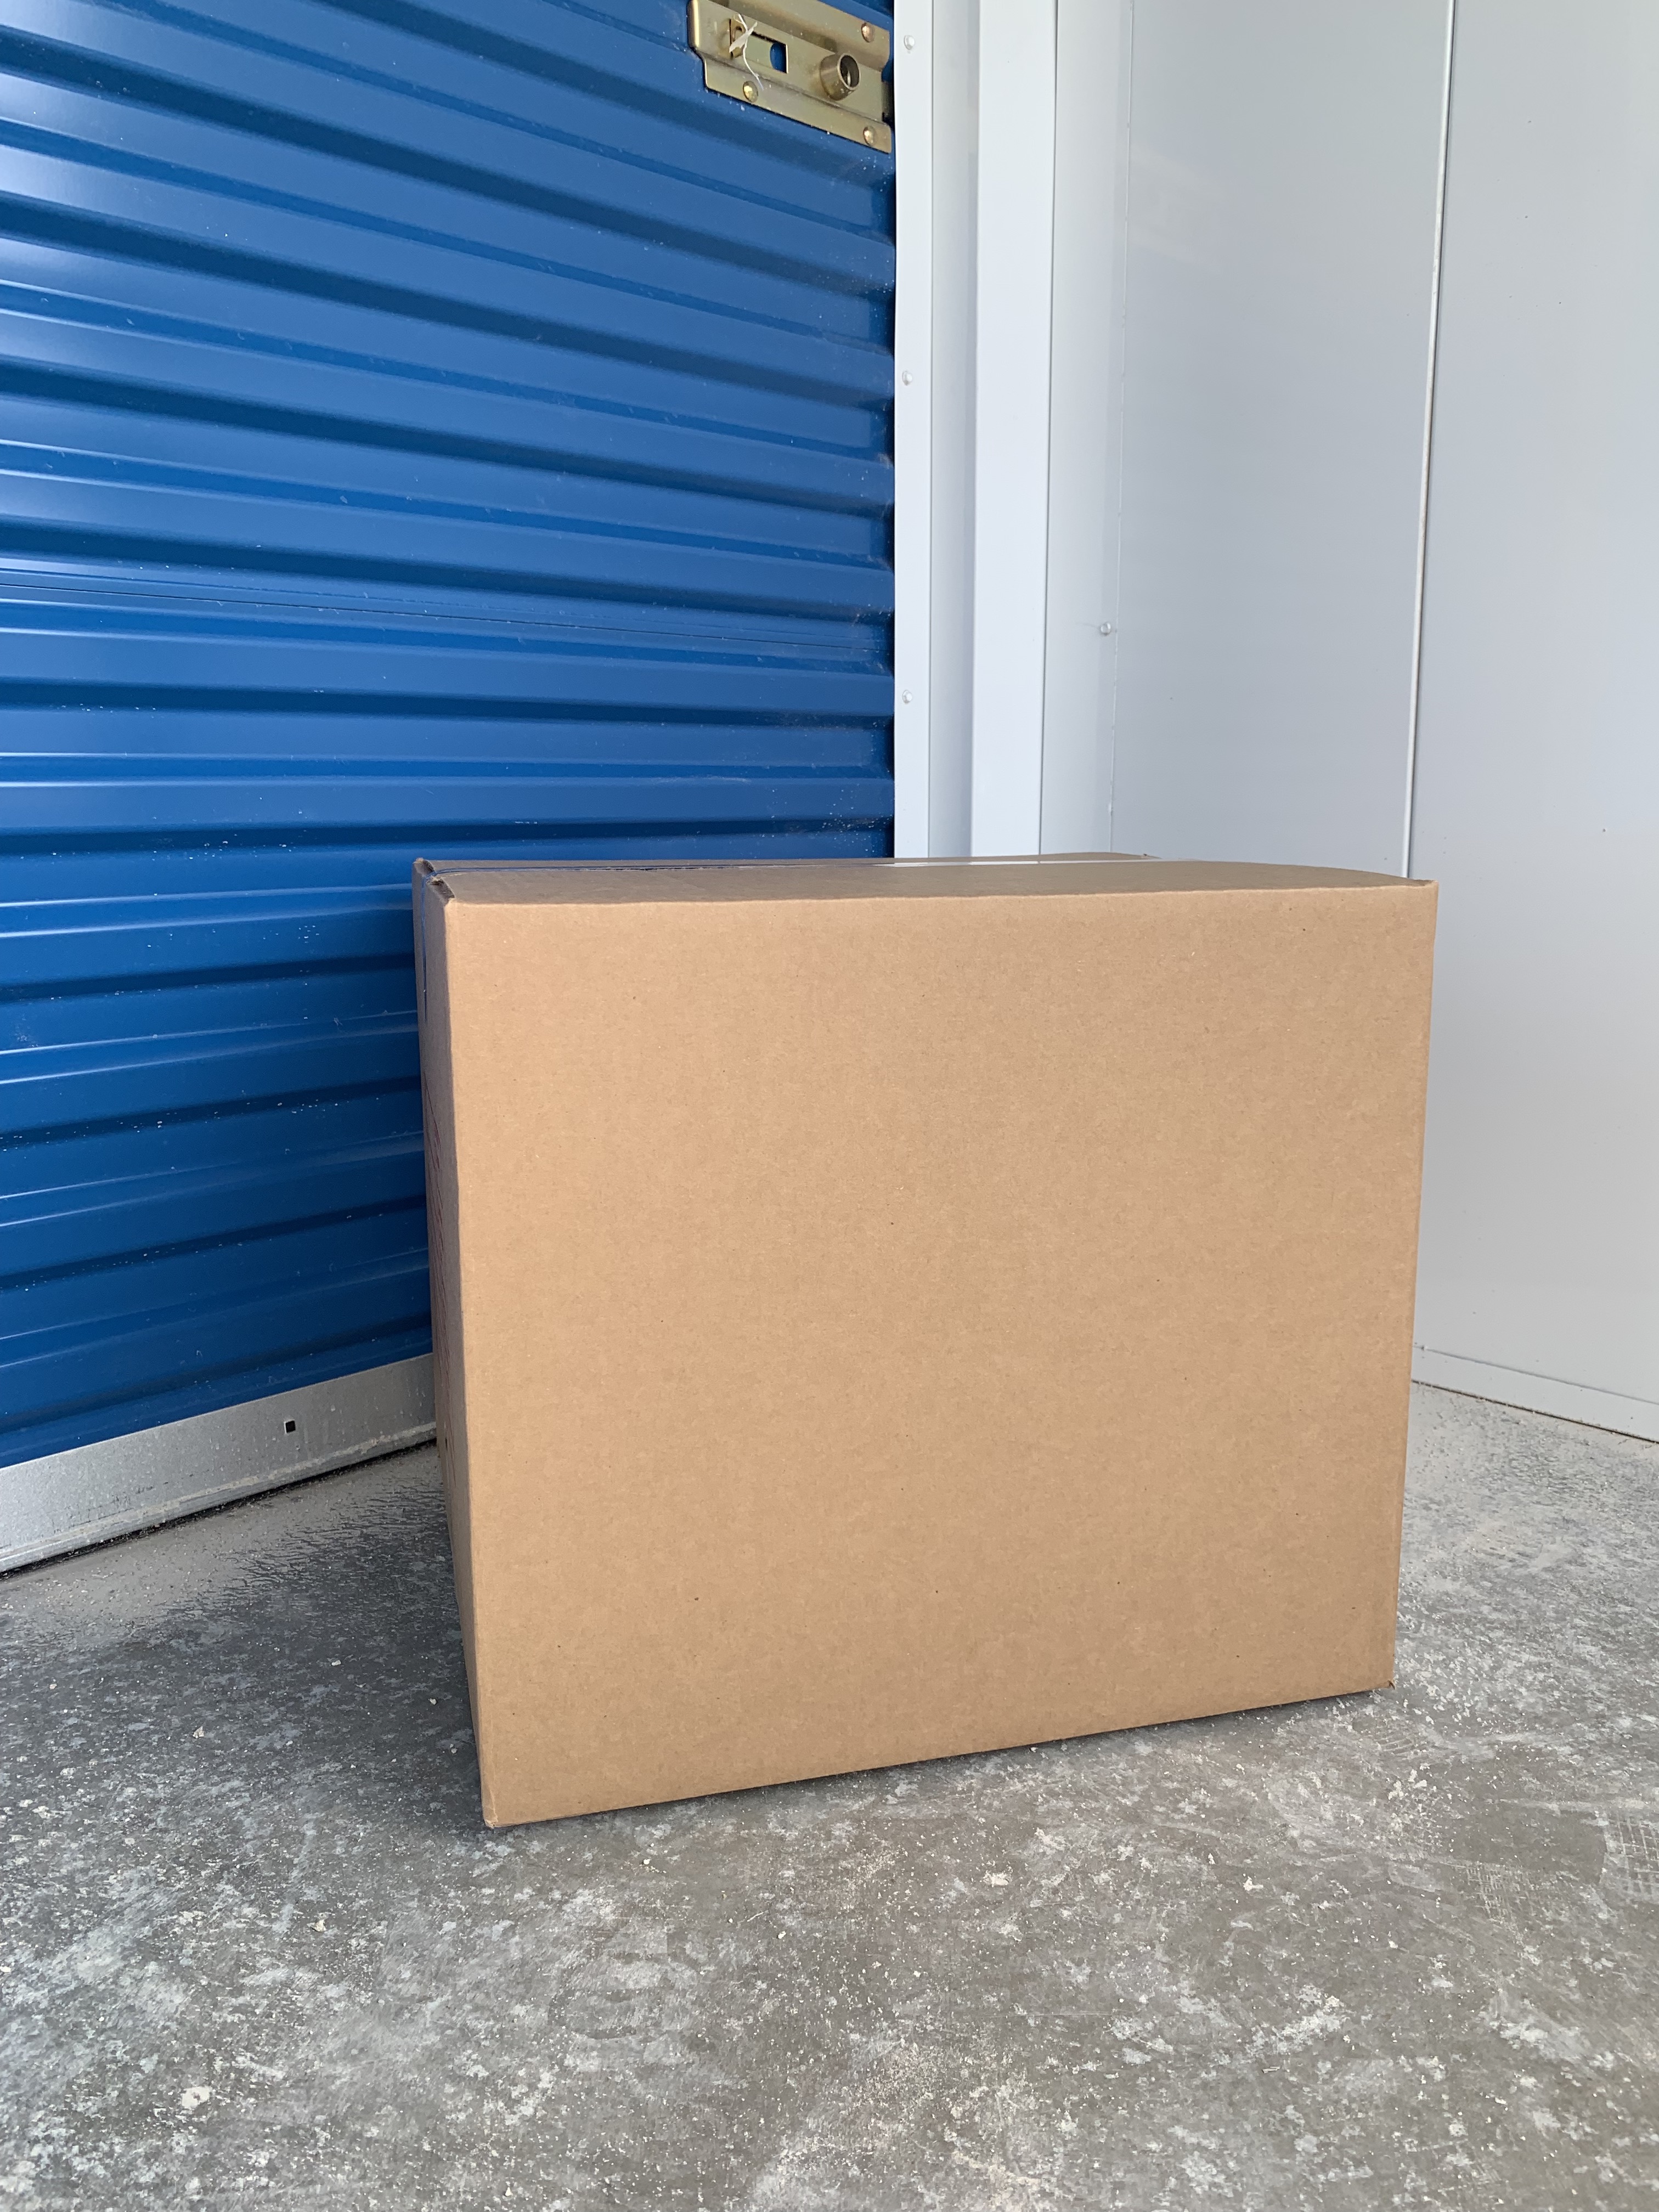 700 Storage - Available Medium Sized Boxes